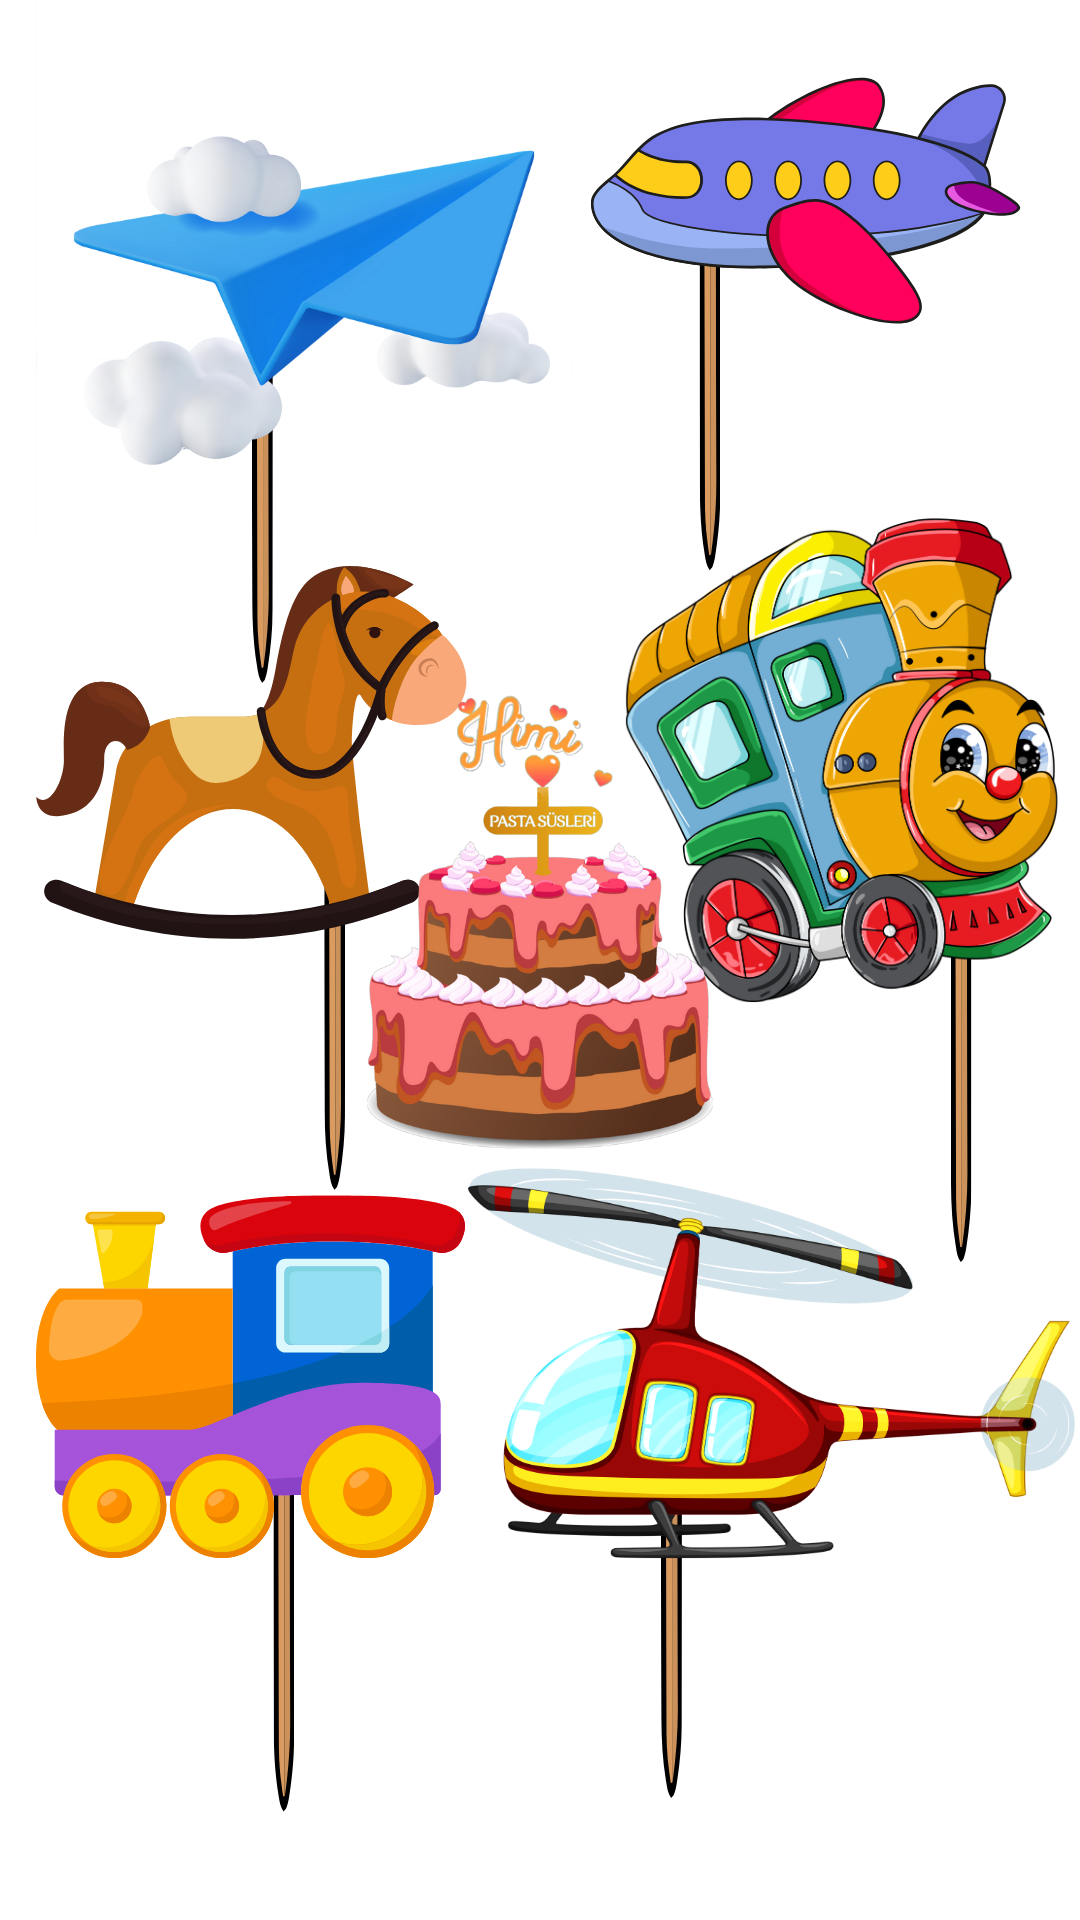 Uçak Tren At Oyuncak Doğum Günü Pasta Süsleri Kız Erkek Çocuk Maket Pasta Kürdanı Cupcake Kürdan Süs M60